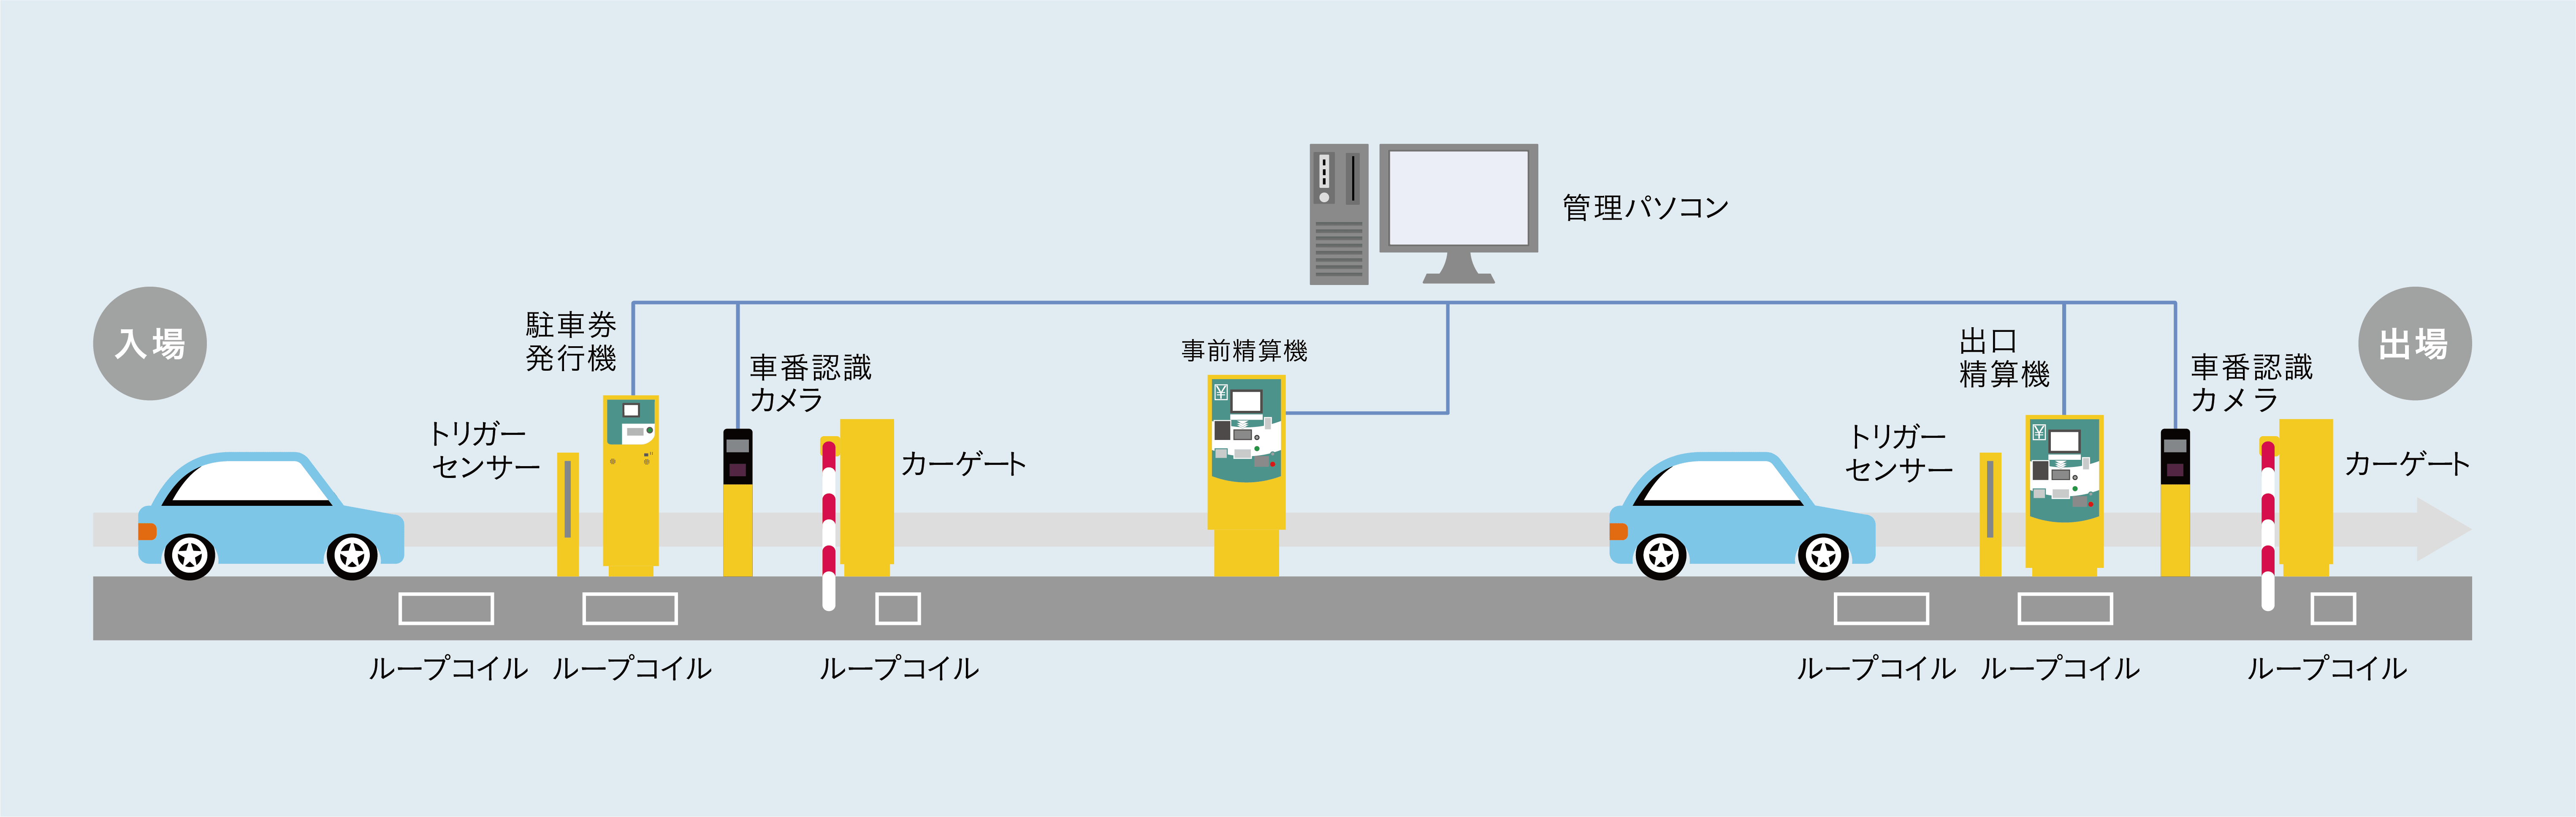 車番認識システム システム構成例